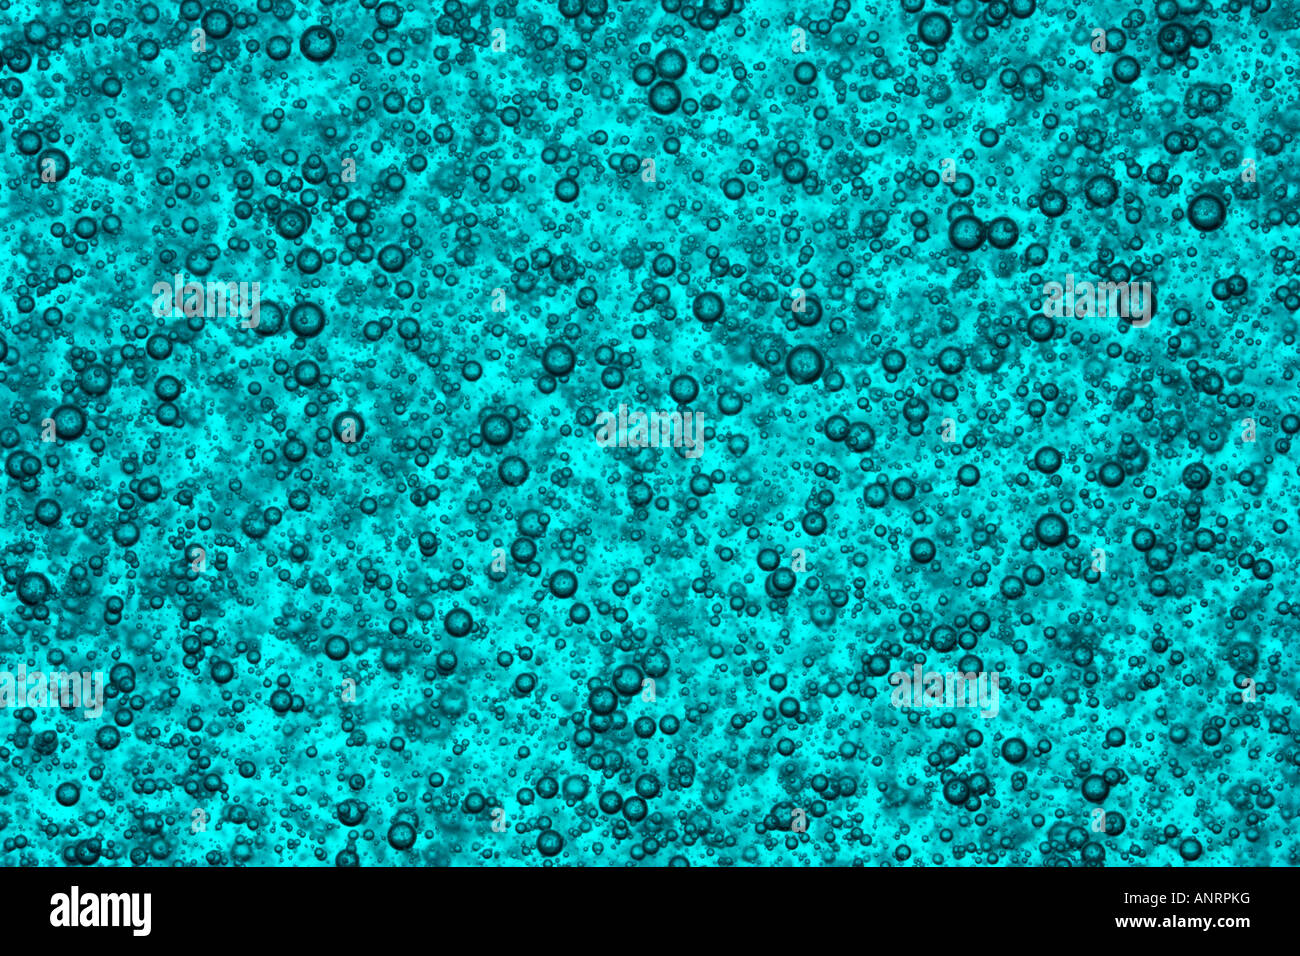 Luft / gas Luftblasen im blauen viskose Flüssigkeit Stockfoto